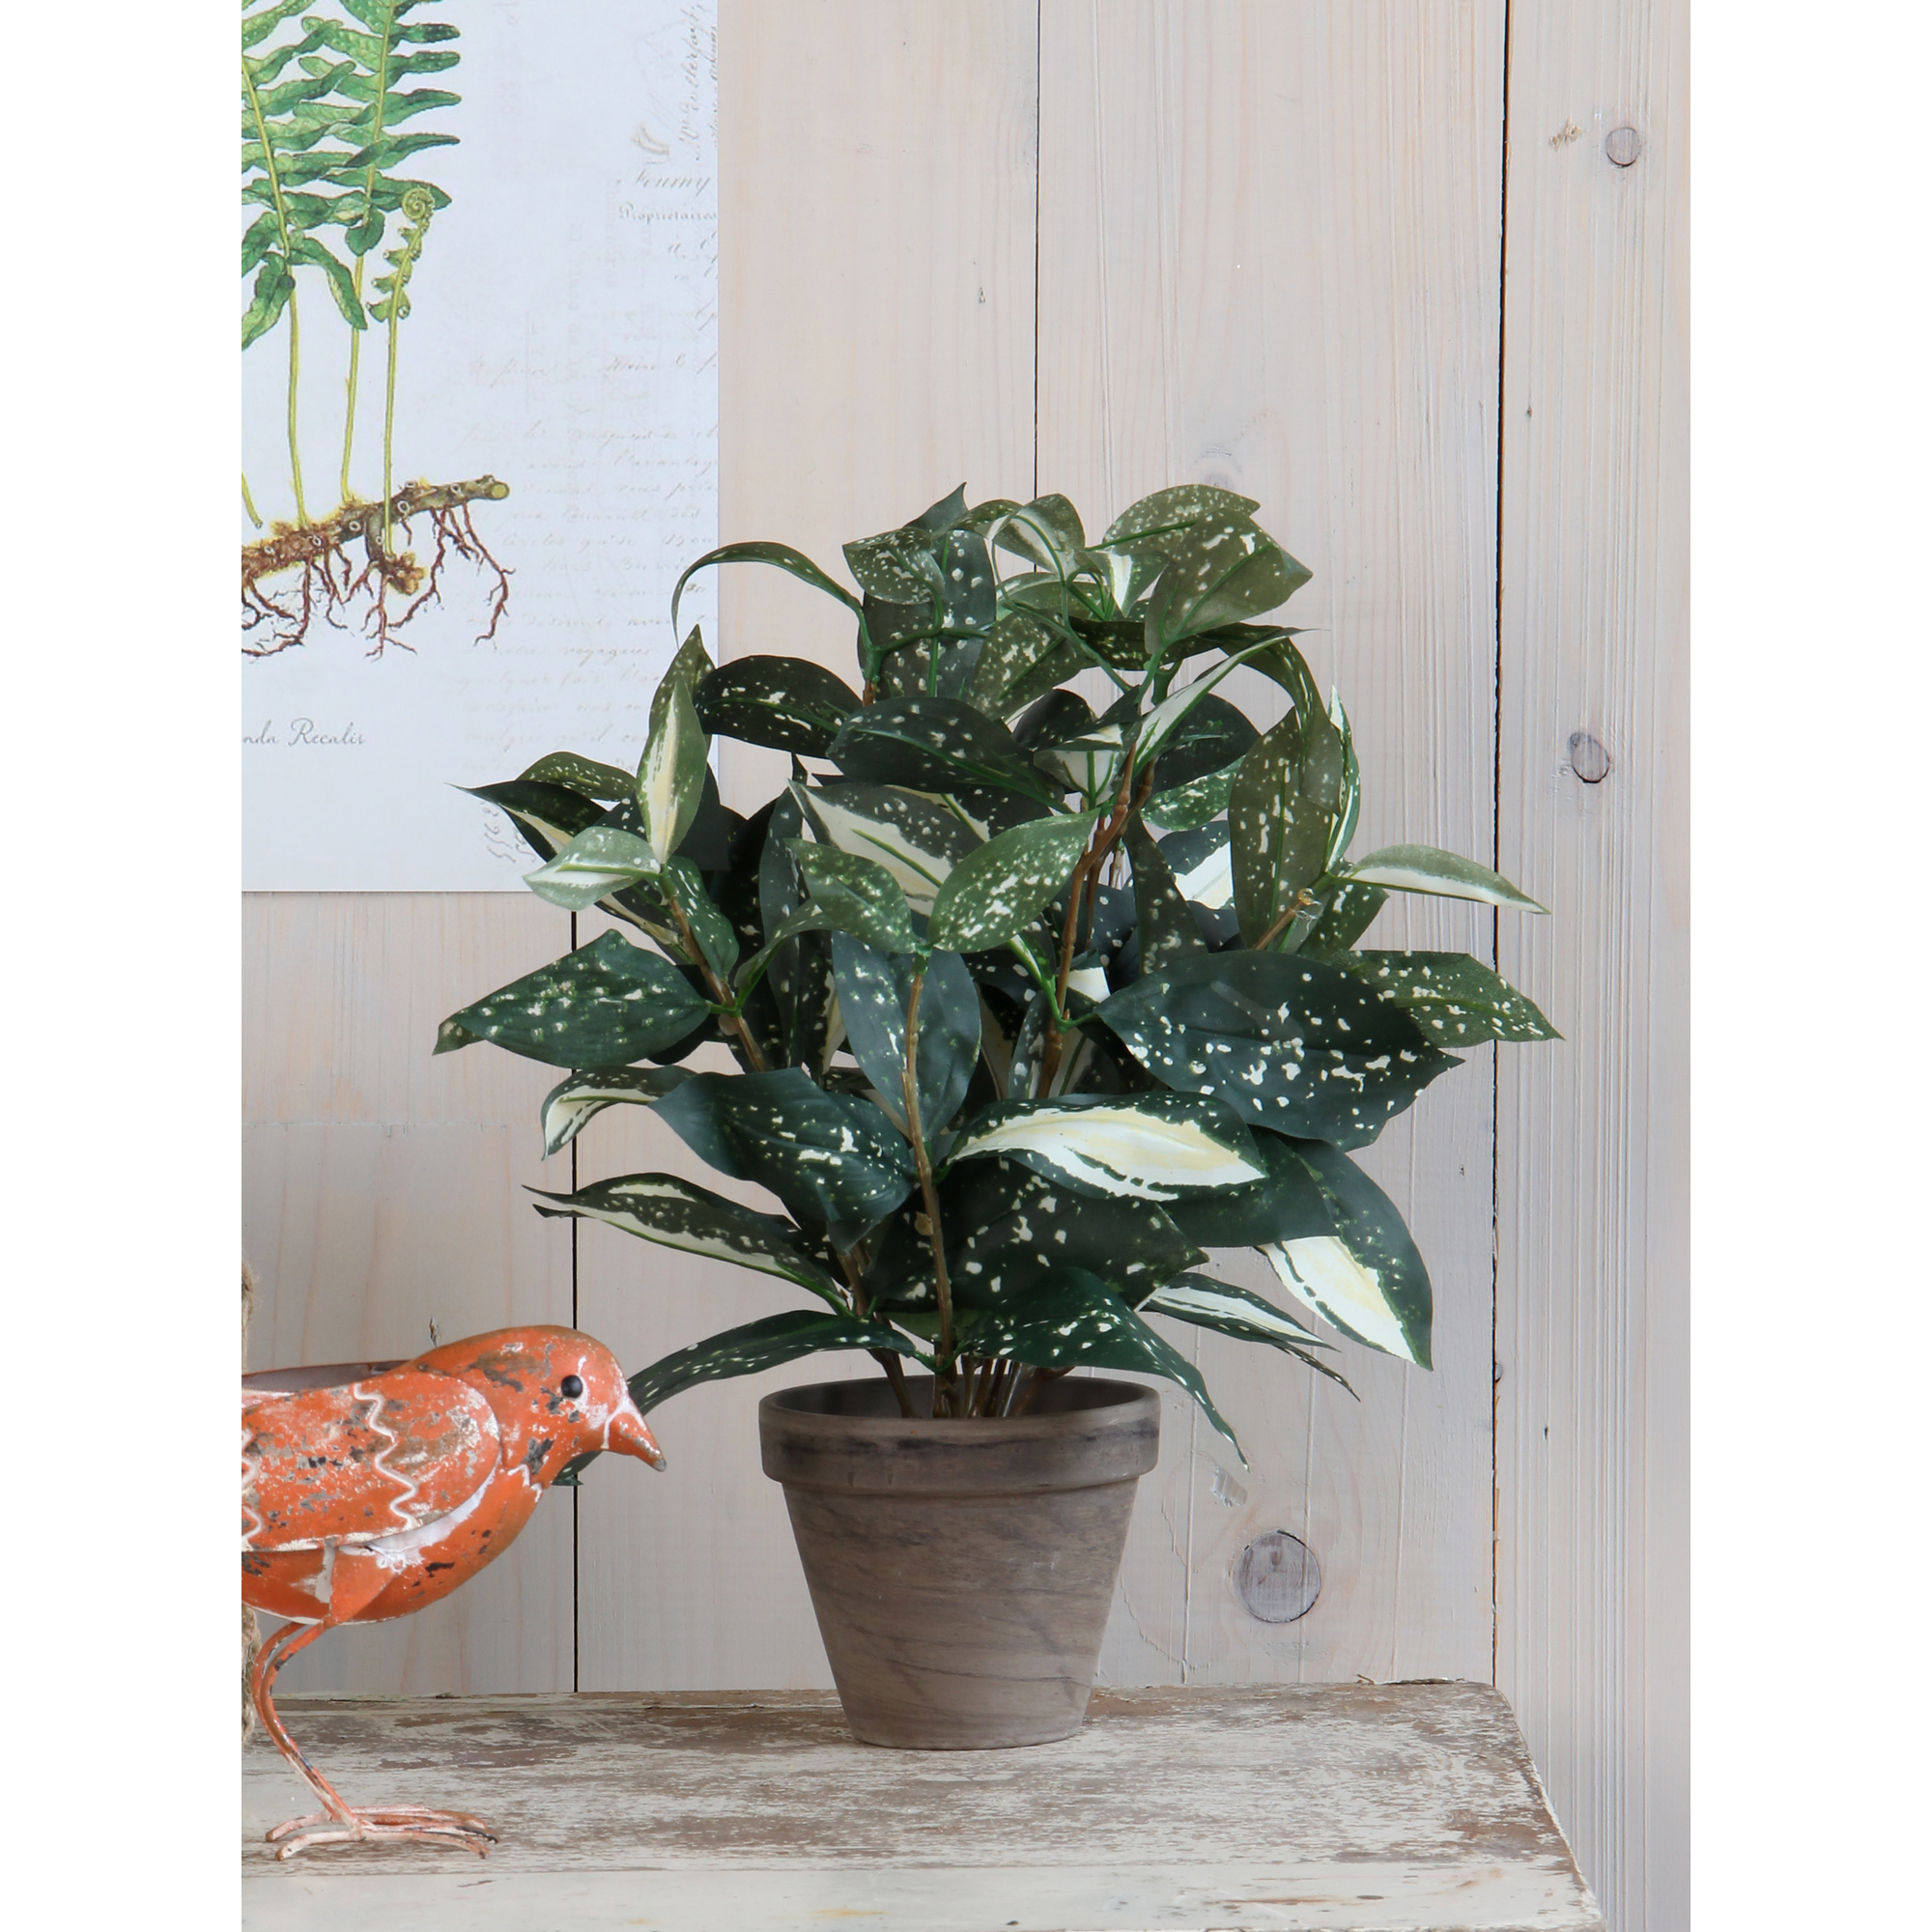 Kunstpflanze Cordyline grün/grau im Topf 11,5 x 35 x 25 cm + product picture